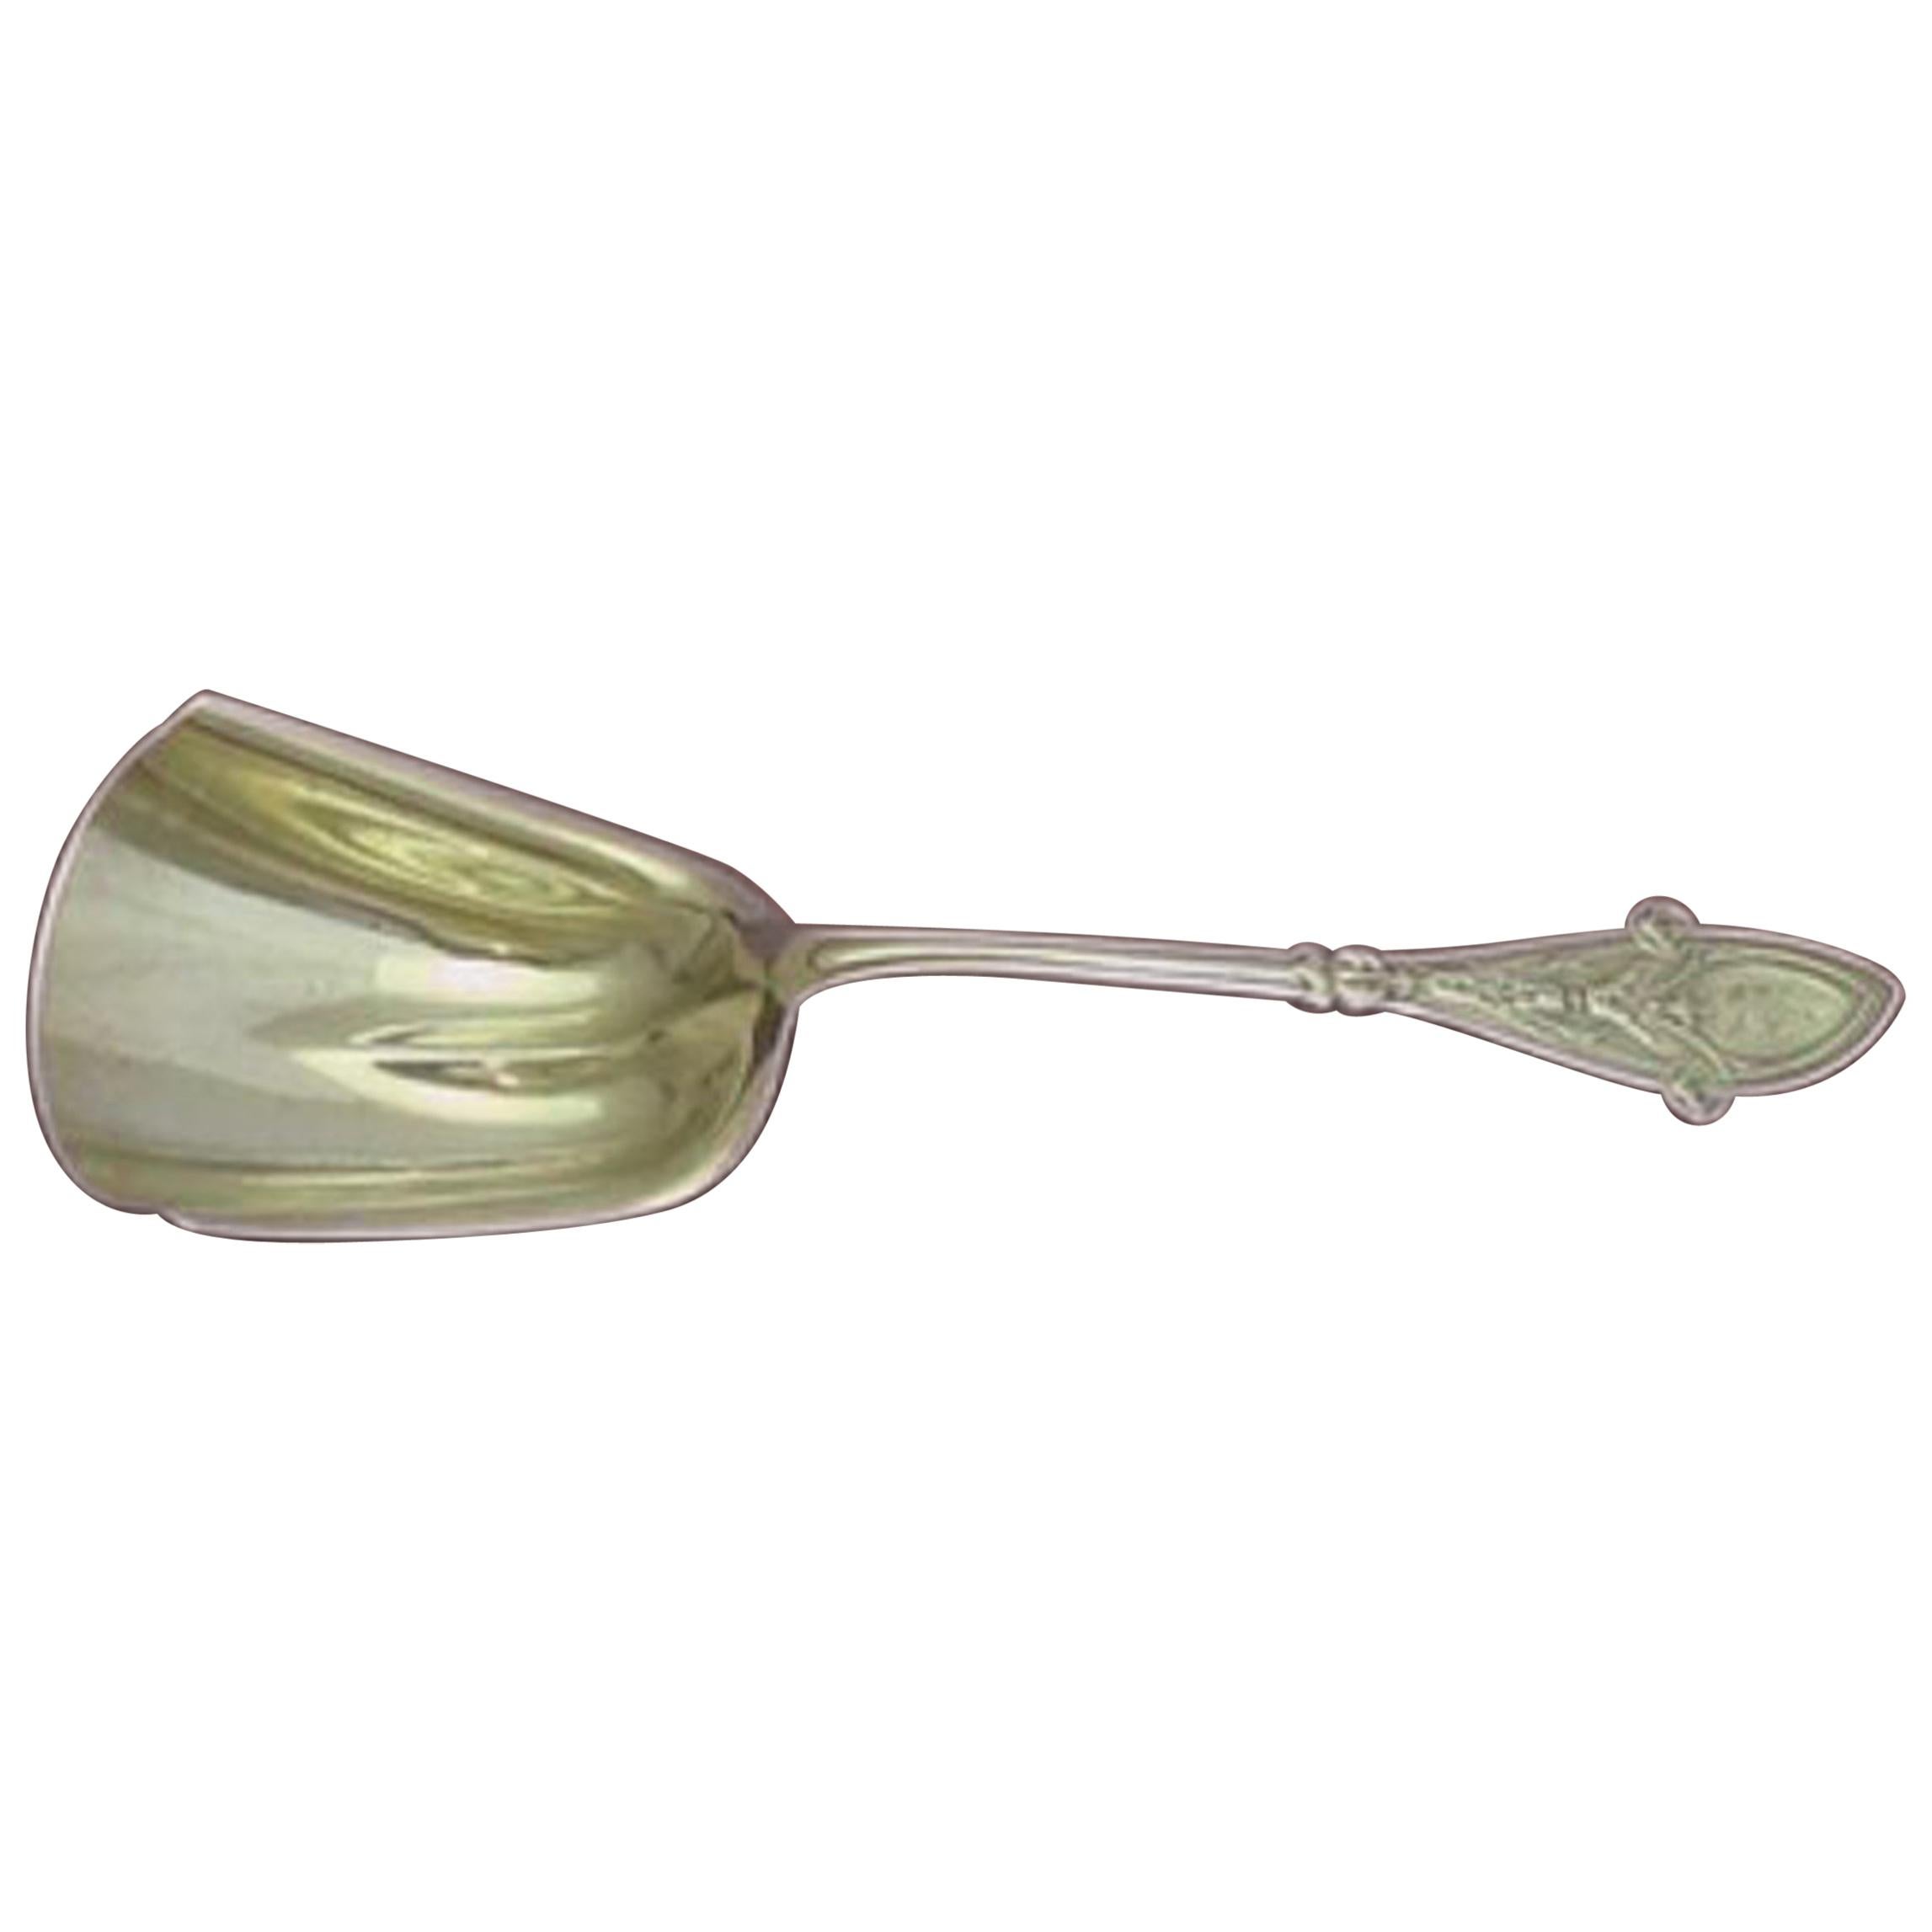 Italian by Tiffany & Co. Sterling Silver Cracker Spoon